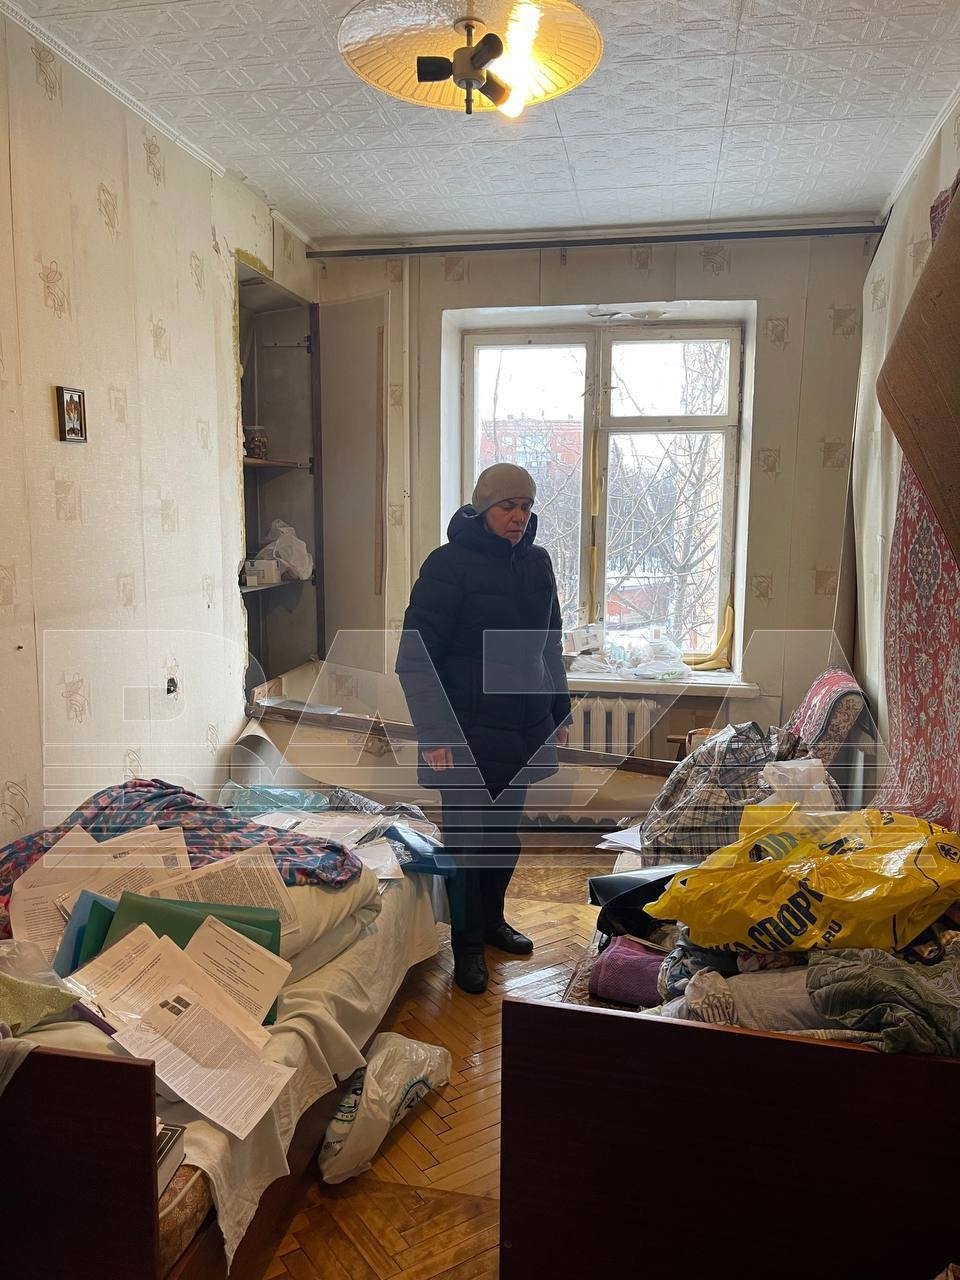 Квартира Буяновой после обыска. Фото: тг-канал Baza